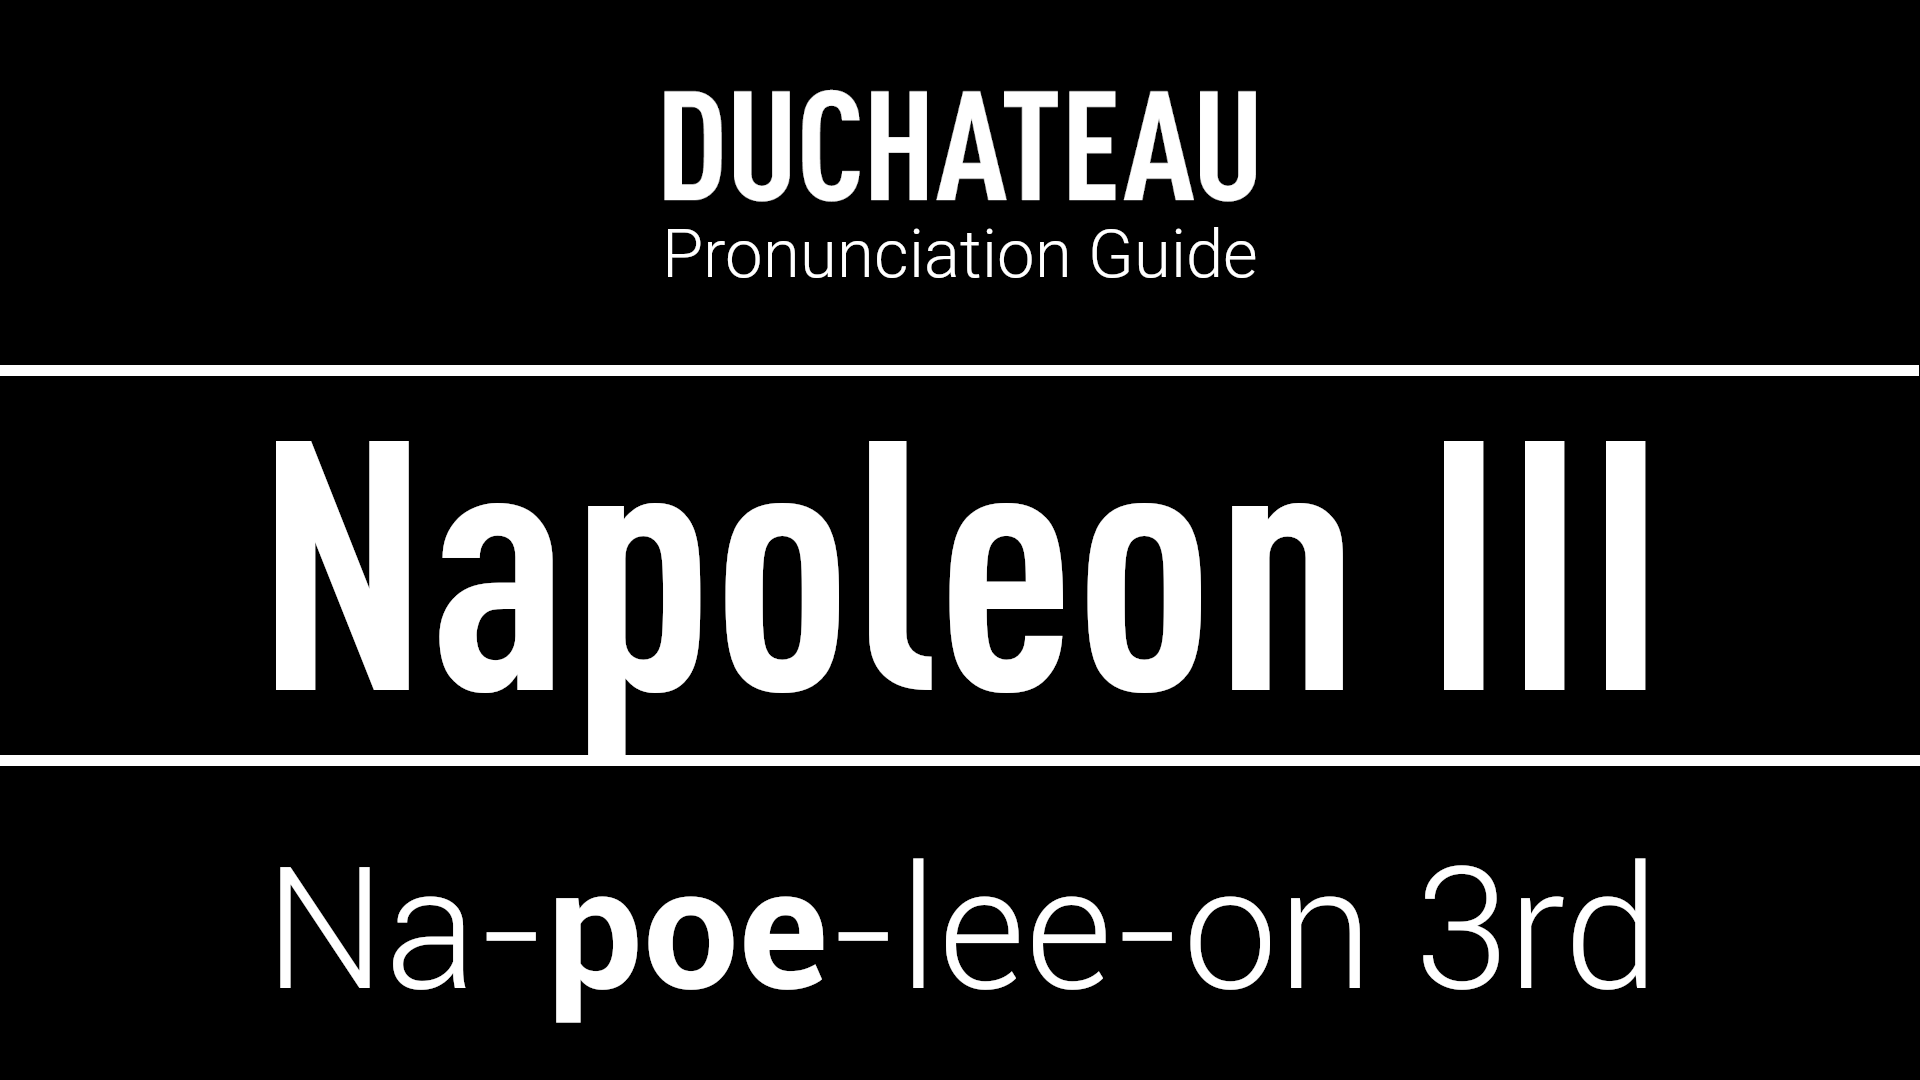 Napoleon III Pronunciation